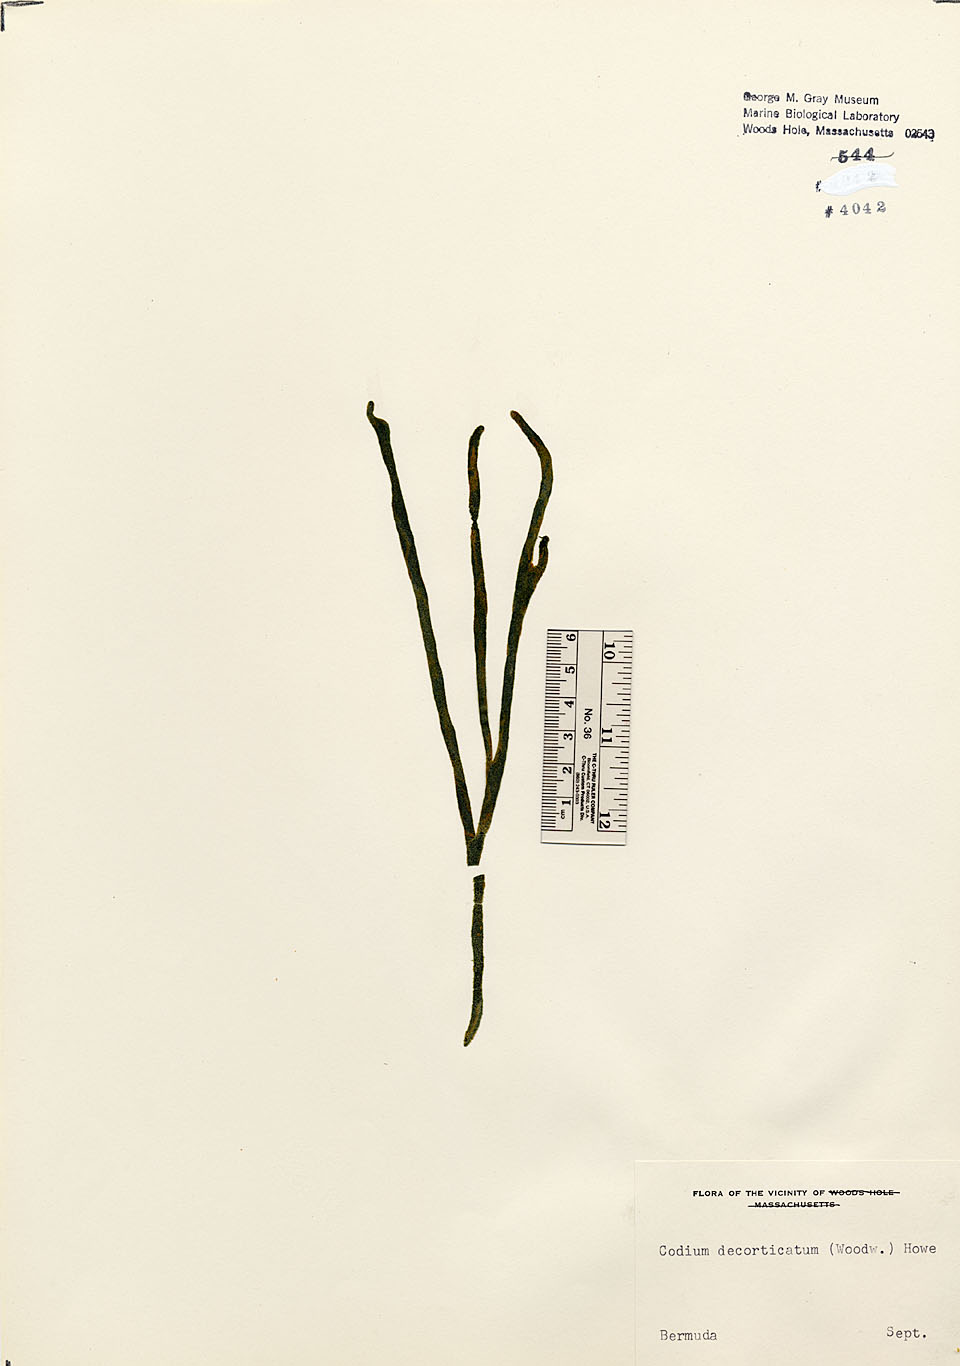 Codiaceae image